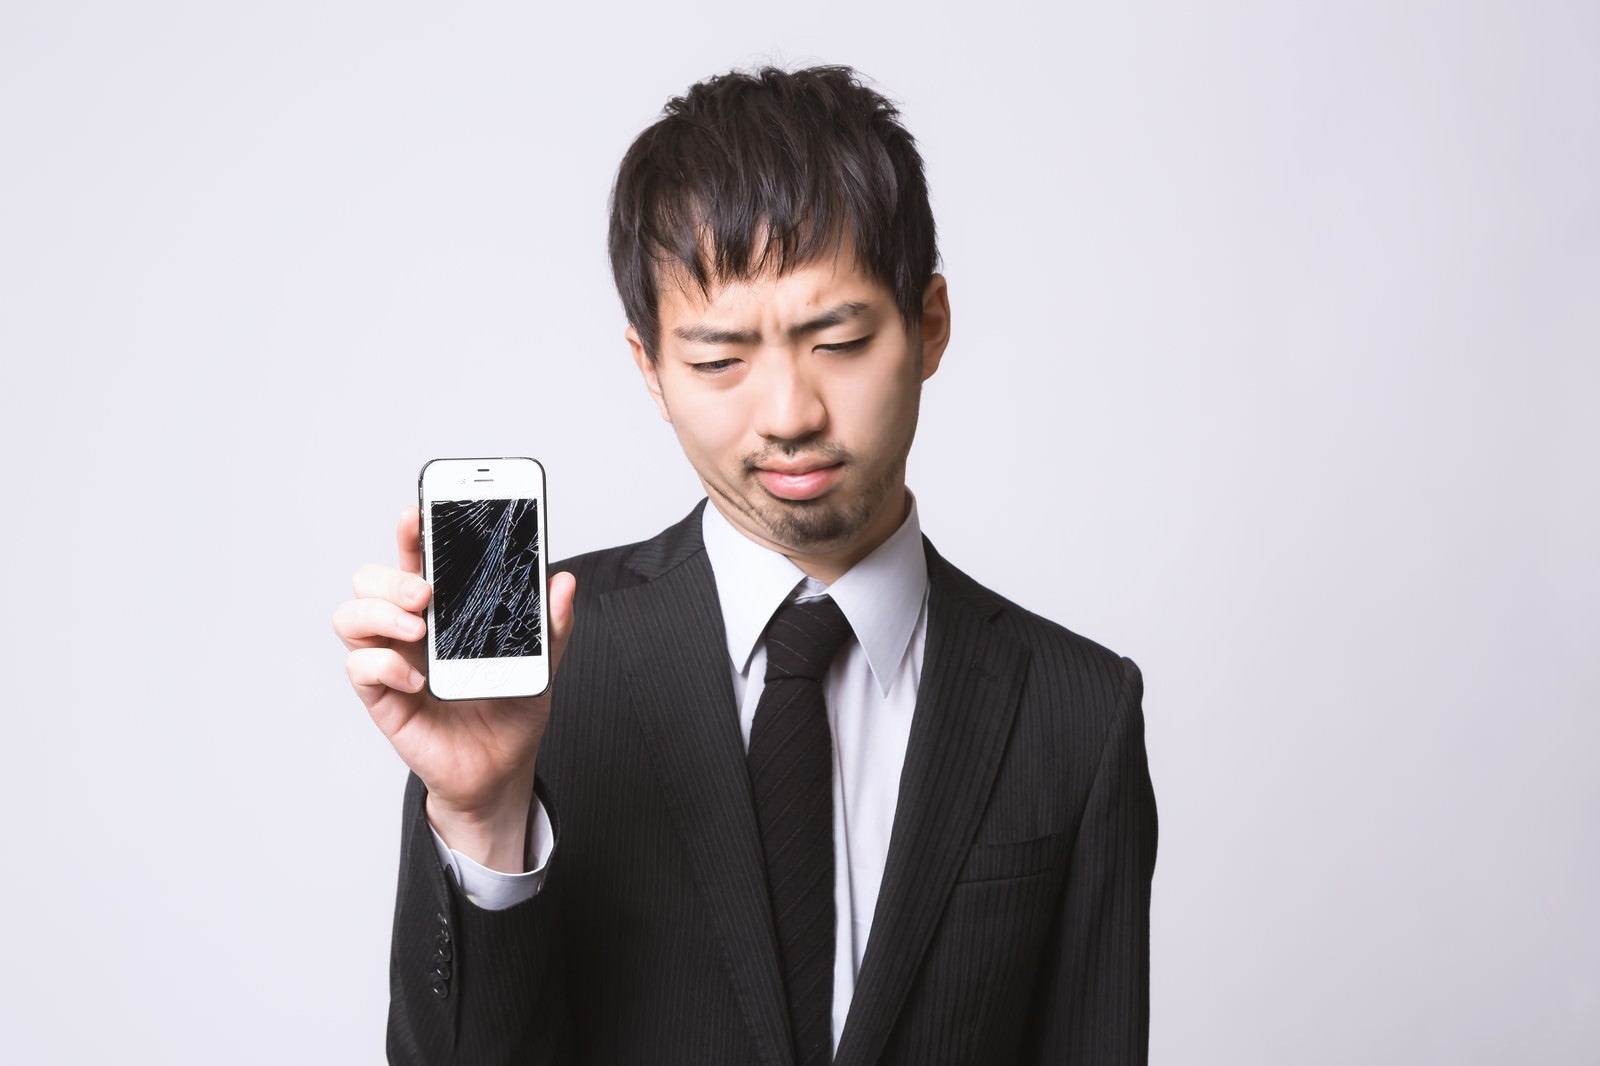 「スマートフォンを落としてガックリしている男性」の写真